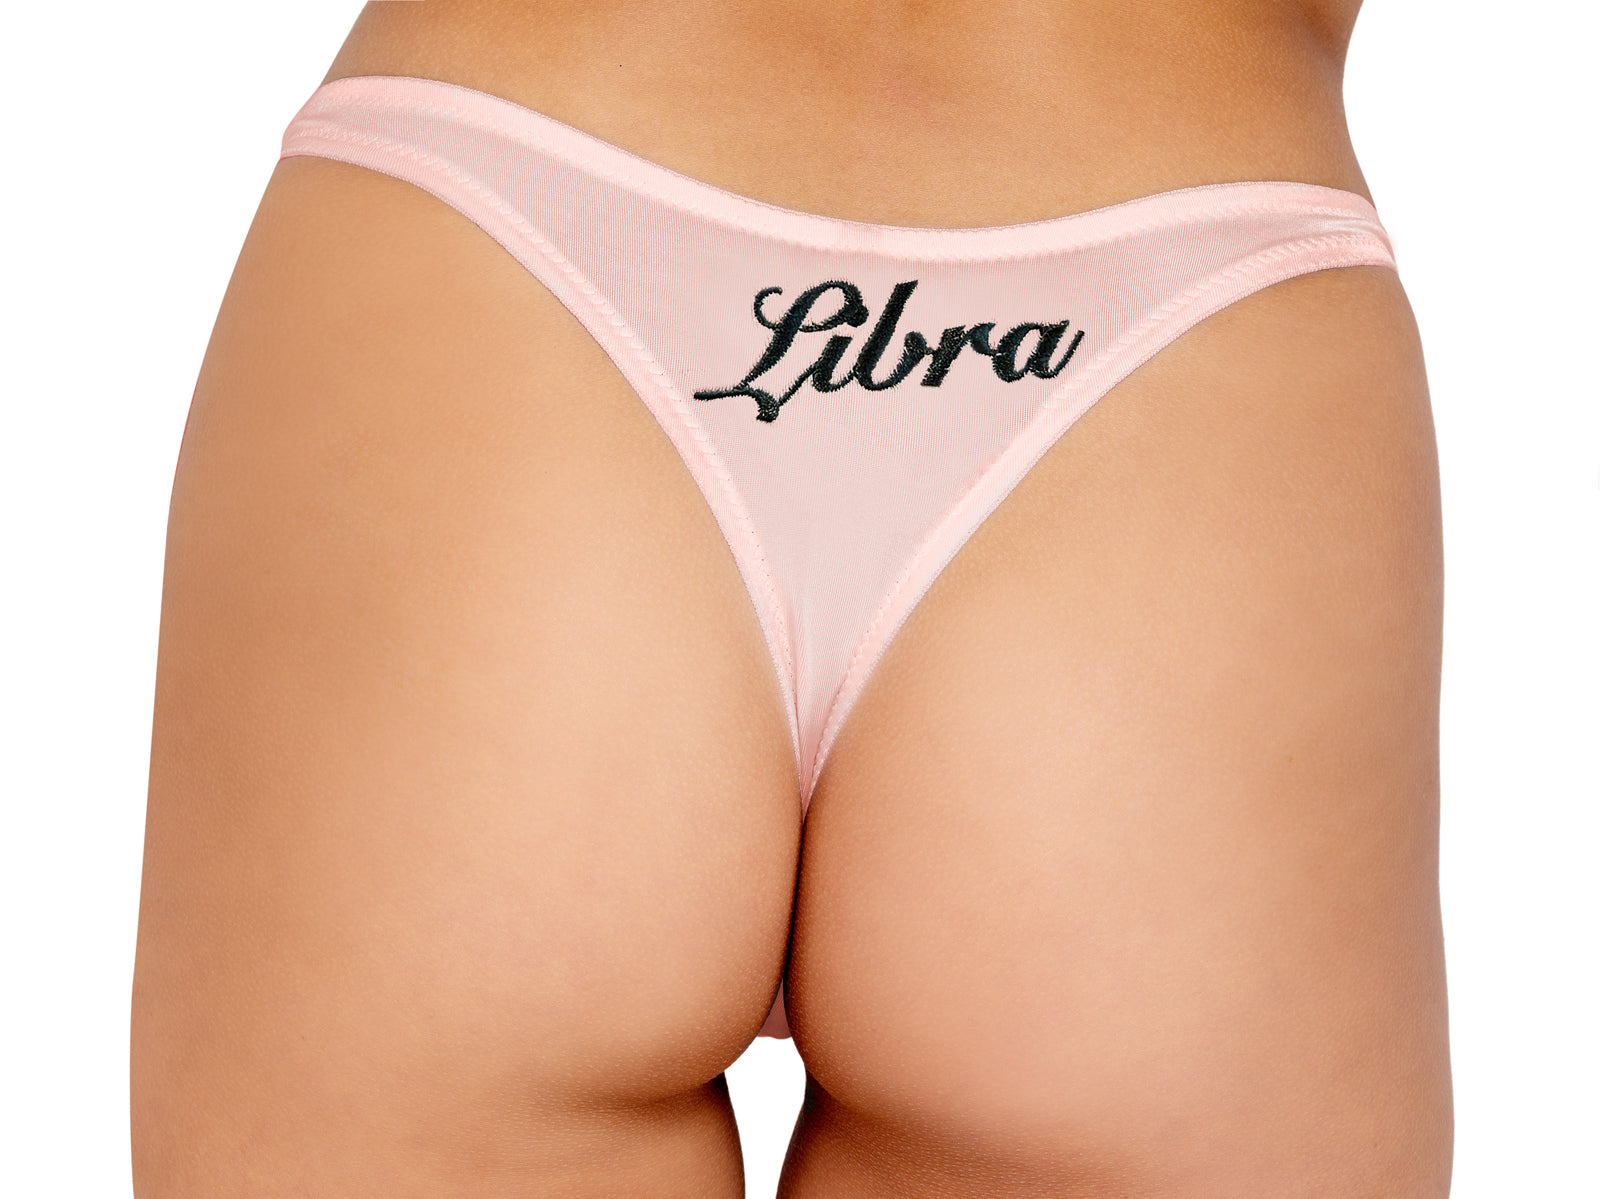 LI530 - Zodiac Libra Panty